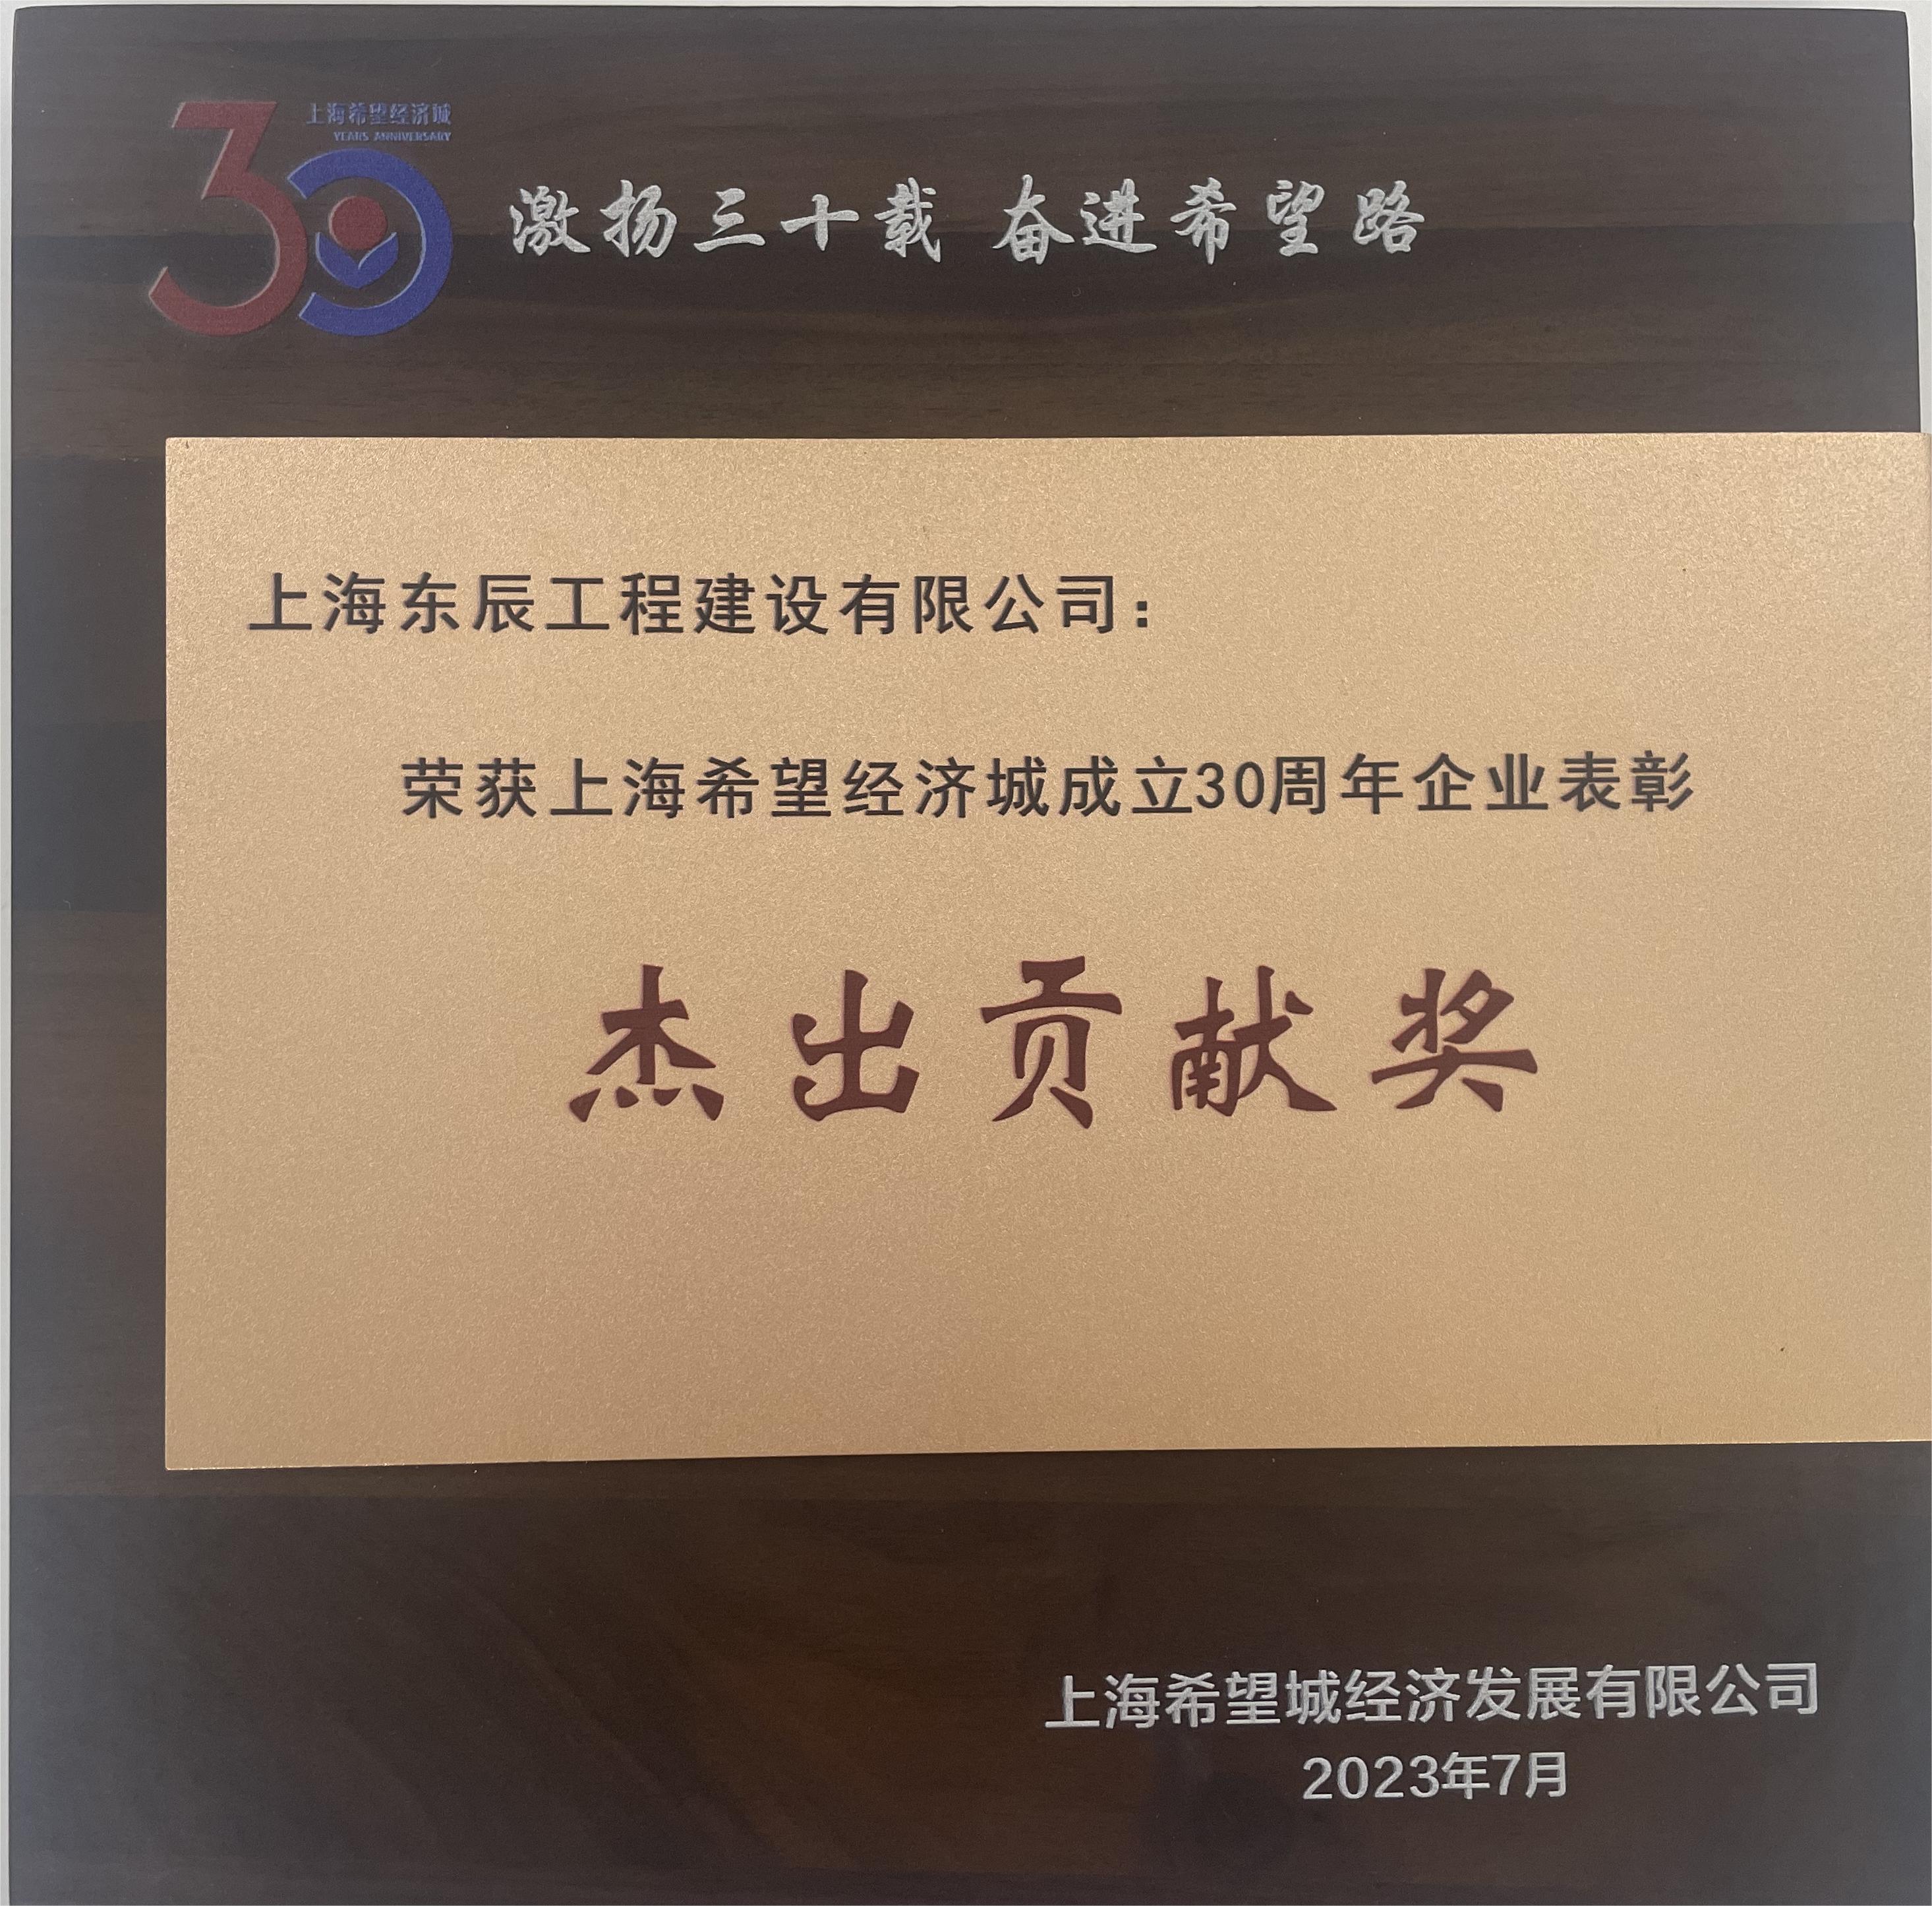 东辰荣获杰出贡献奖——上海希望经济城成立30周年企业表彰